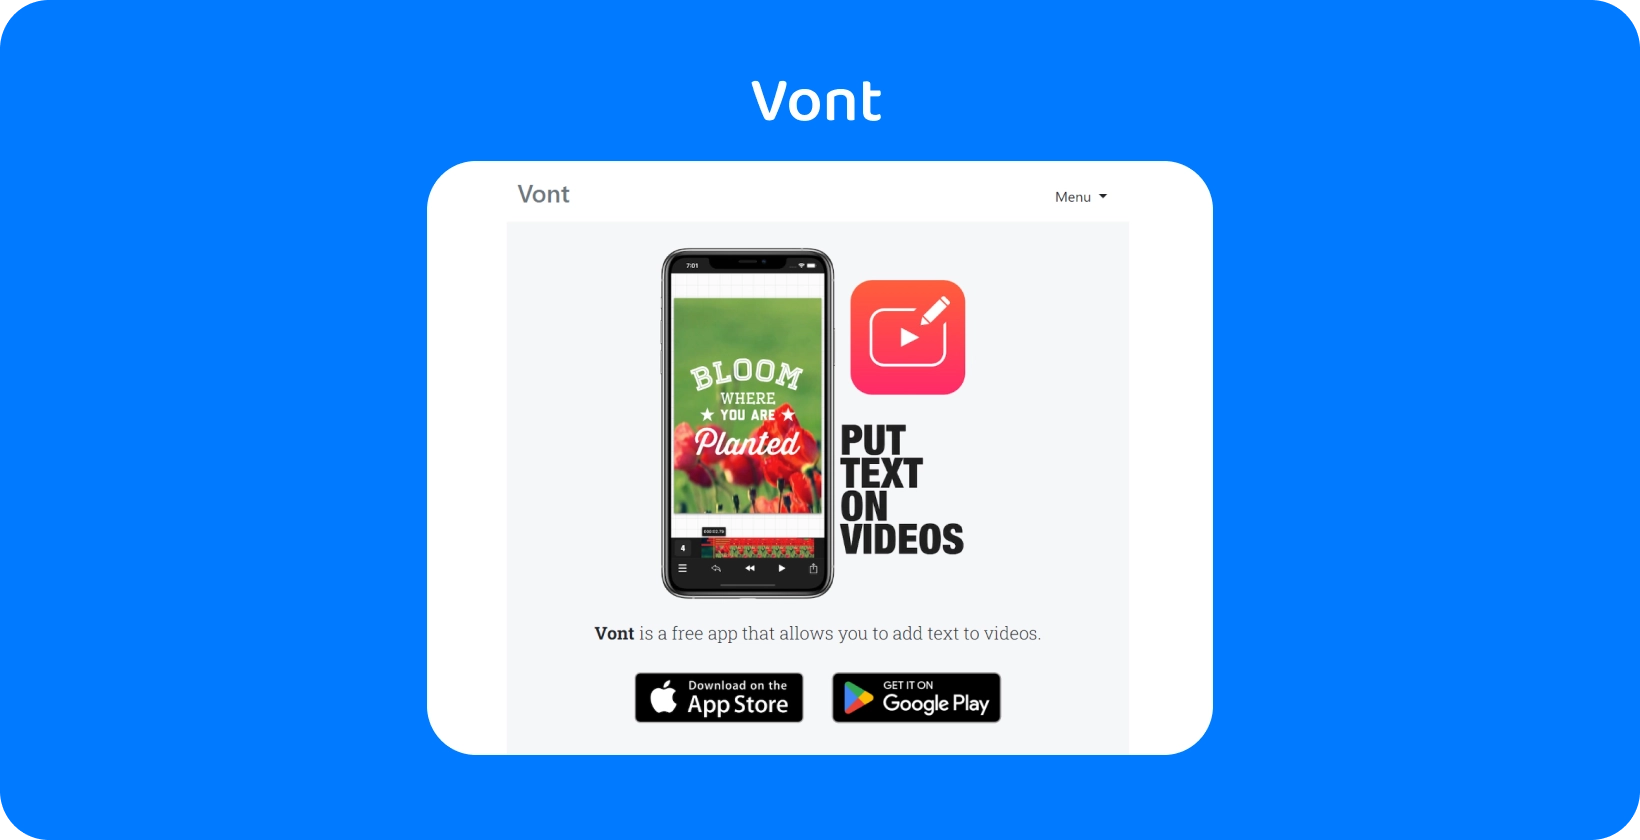 Smartphone care afișează interfața aplicației Vont, evidențiind caracteristica sa de a adăuga text pe videoclipuri, disponibil pe App Store și Google Play